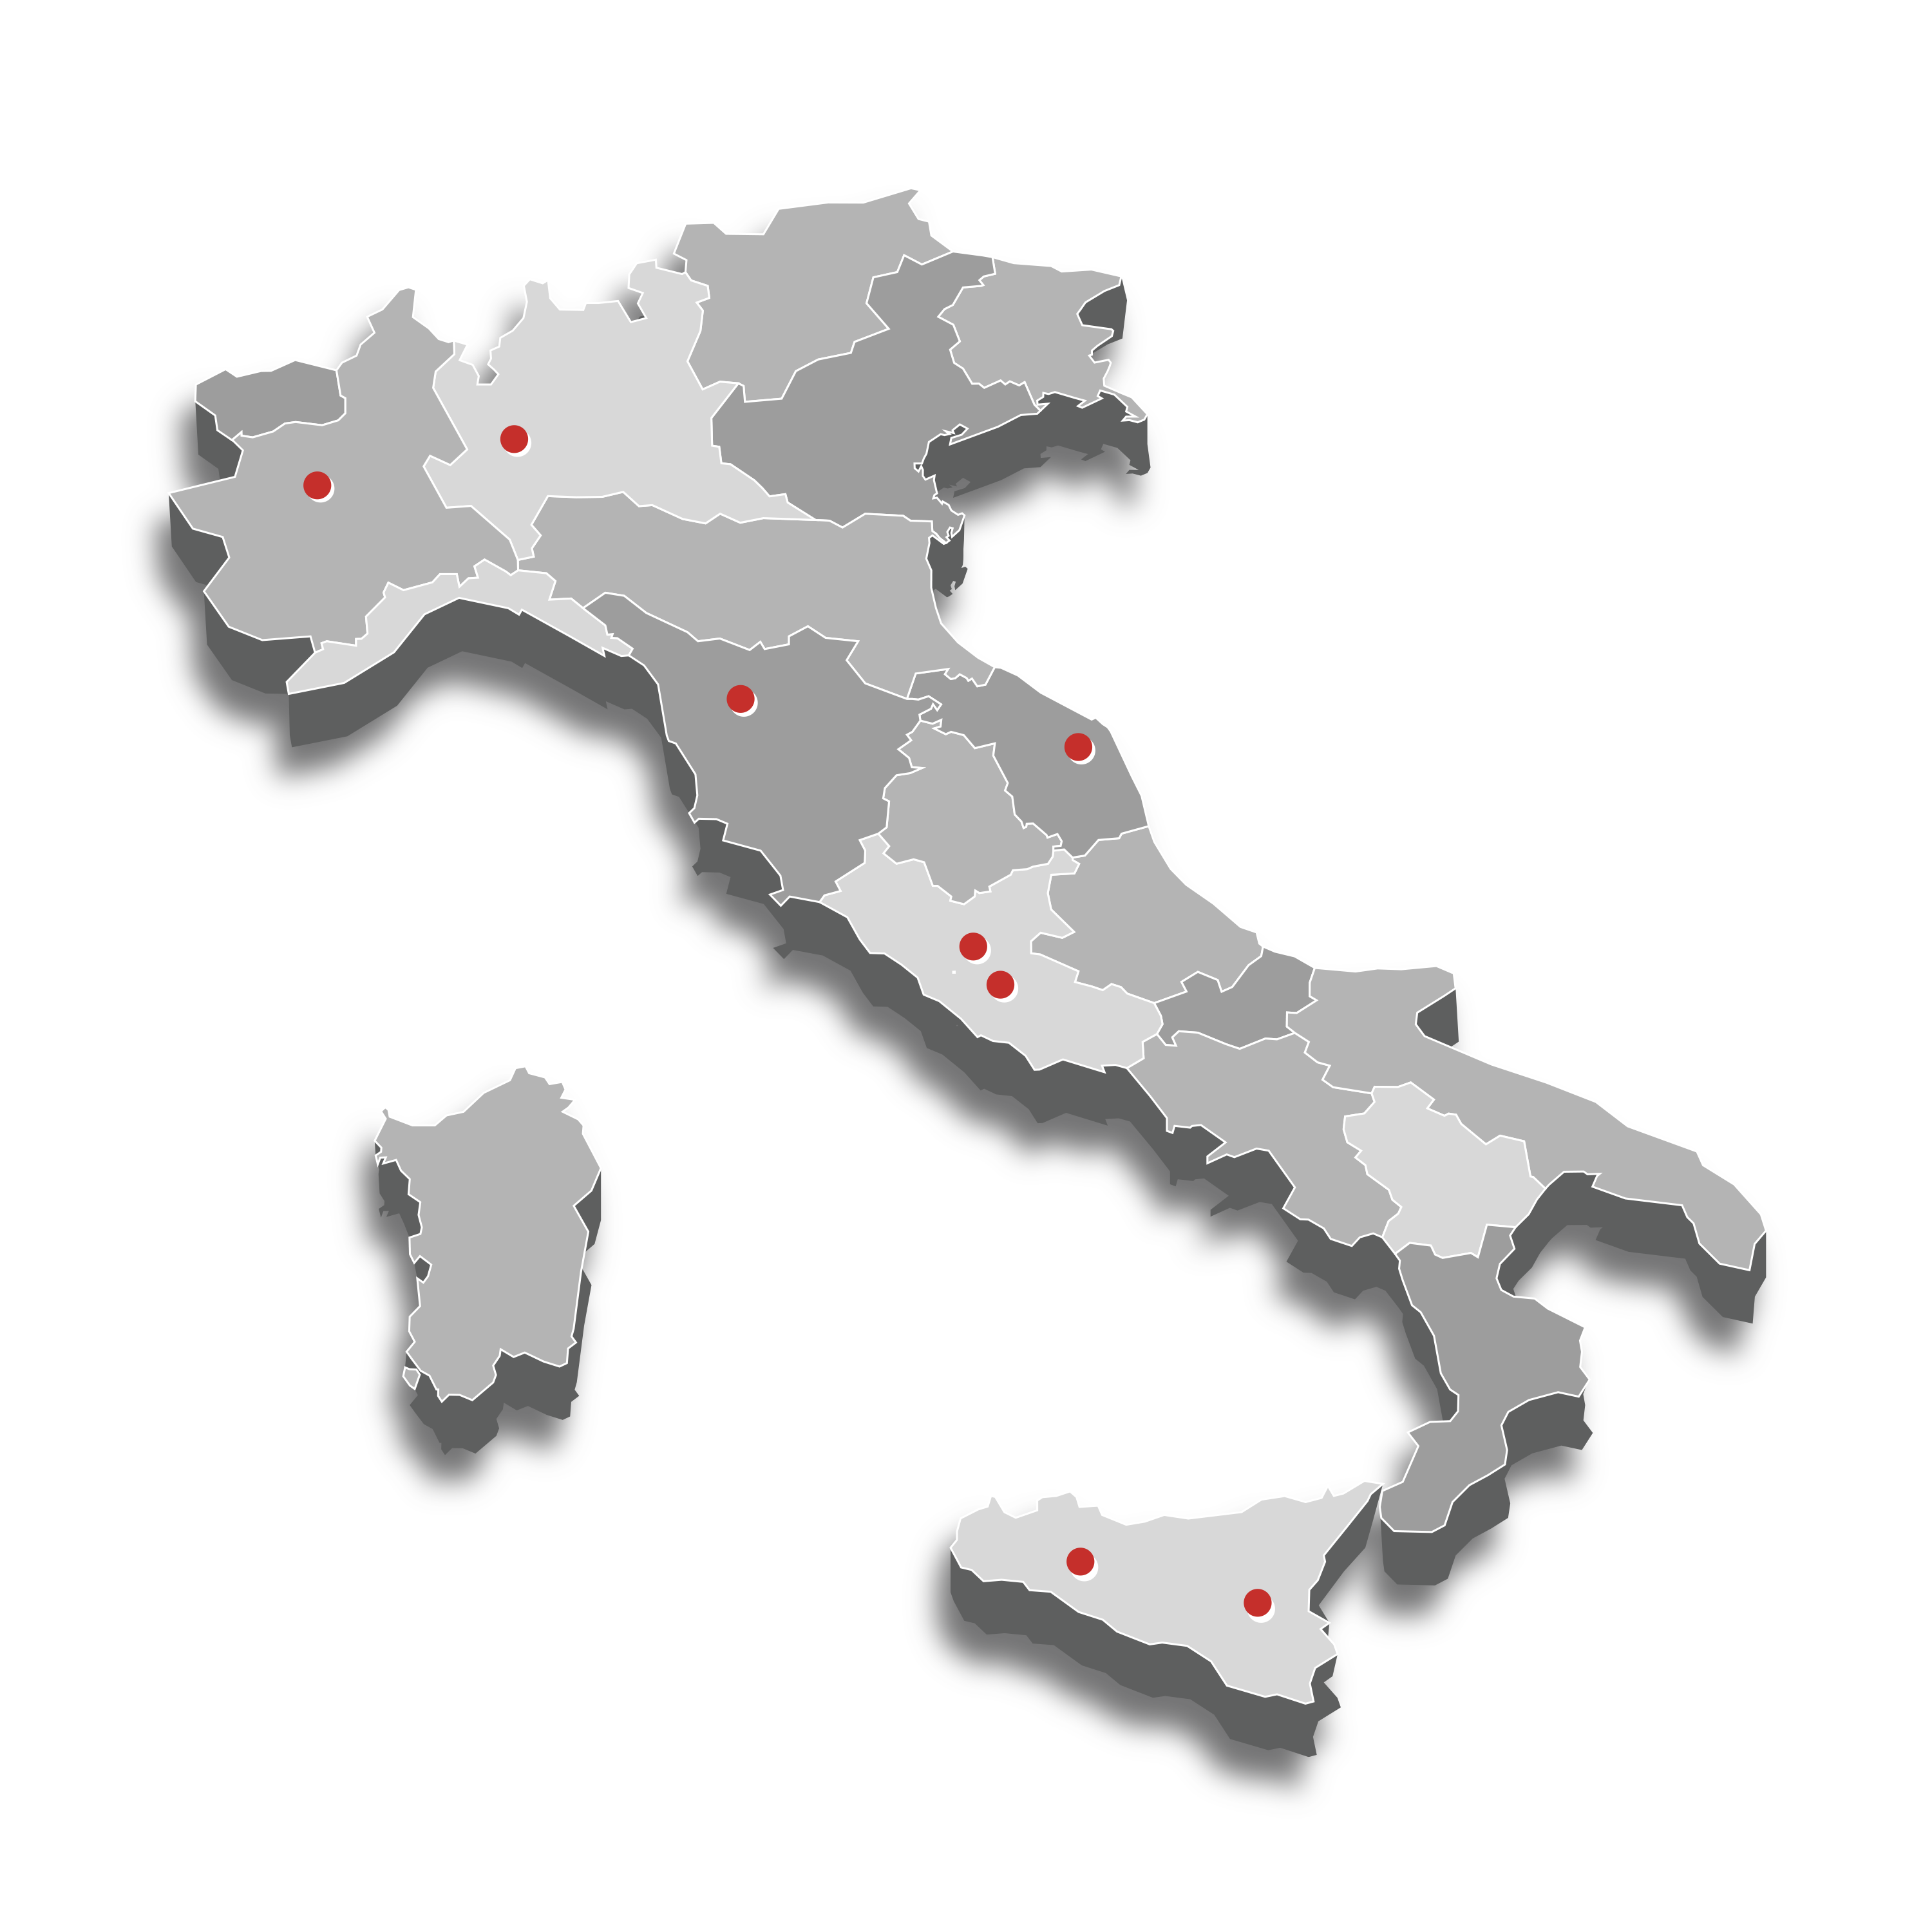 imagine dell’Italia con le sedi S3K